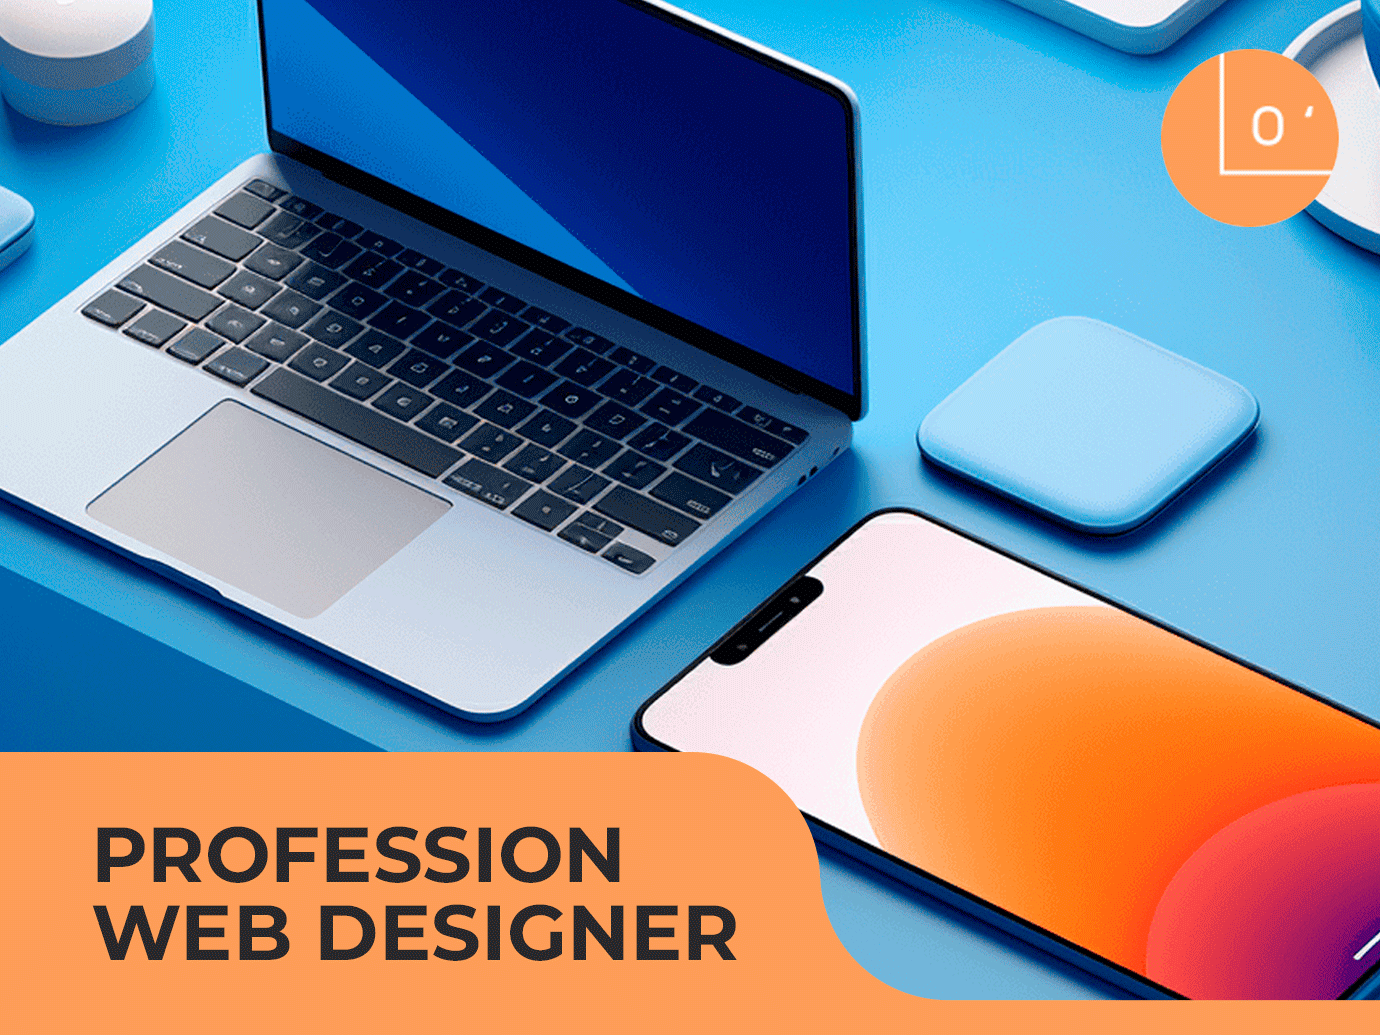 Profession web designer